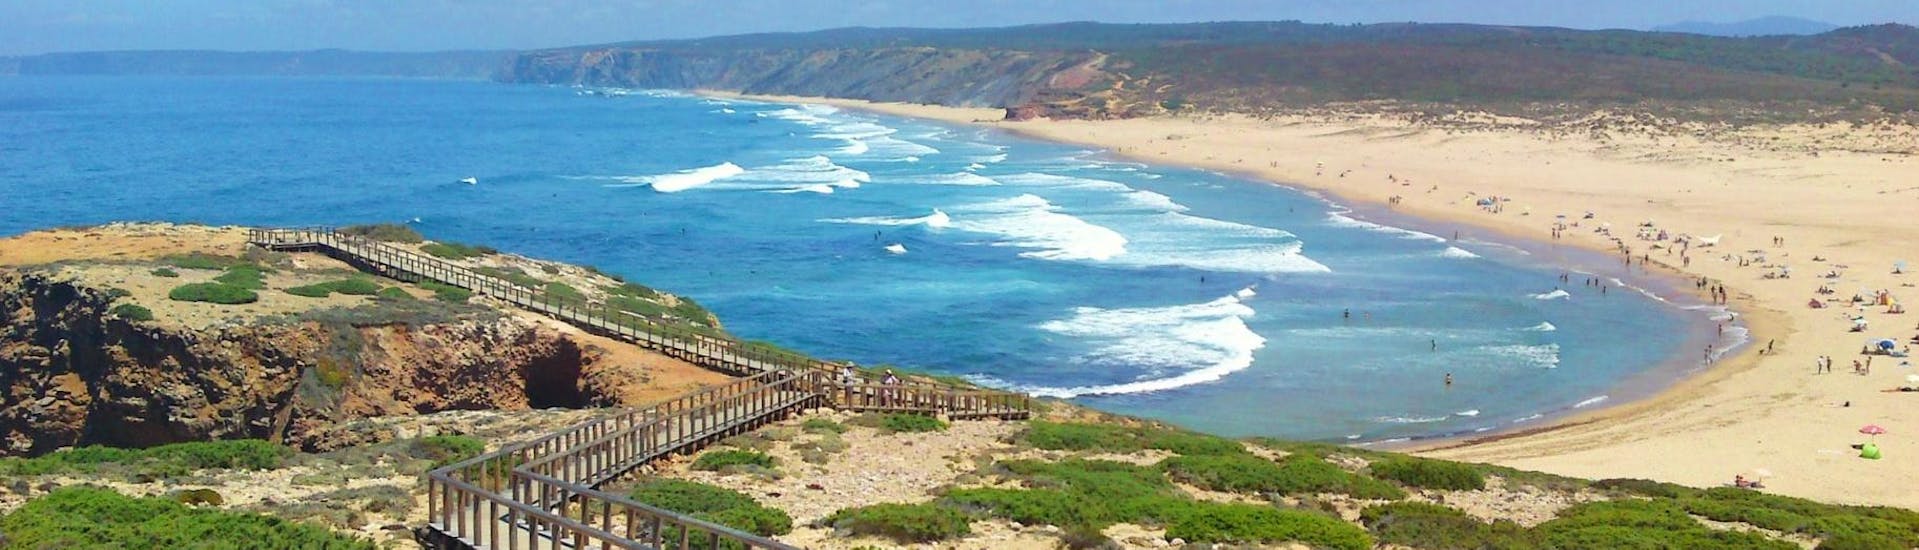 Blick über einen der Strände der Costa Vicentina, wo die Neptunos Surf School Algarve ihre Surfkurse anbietet.